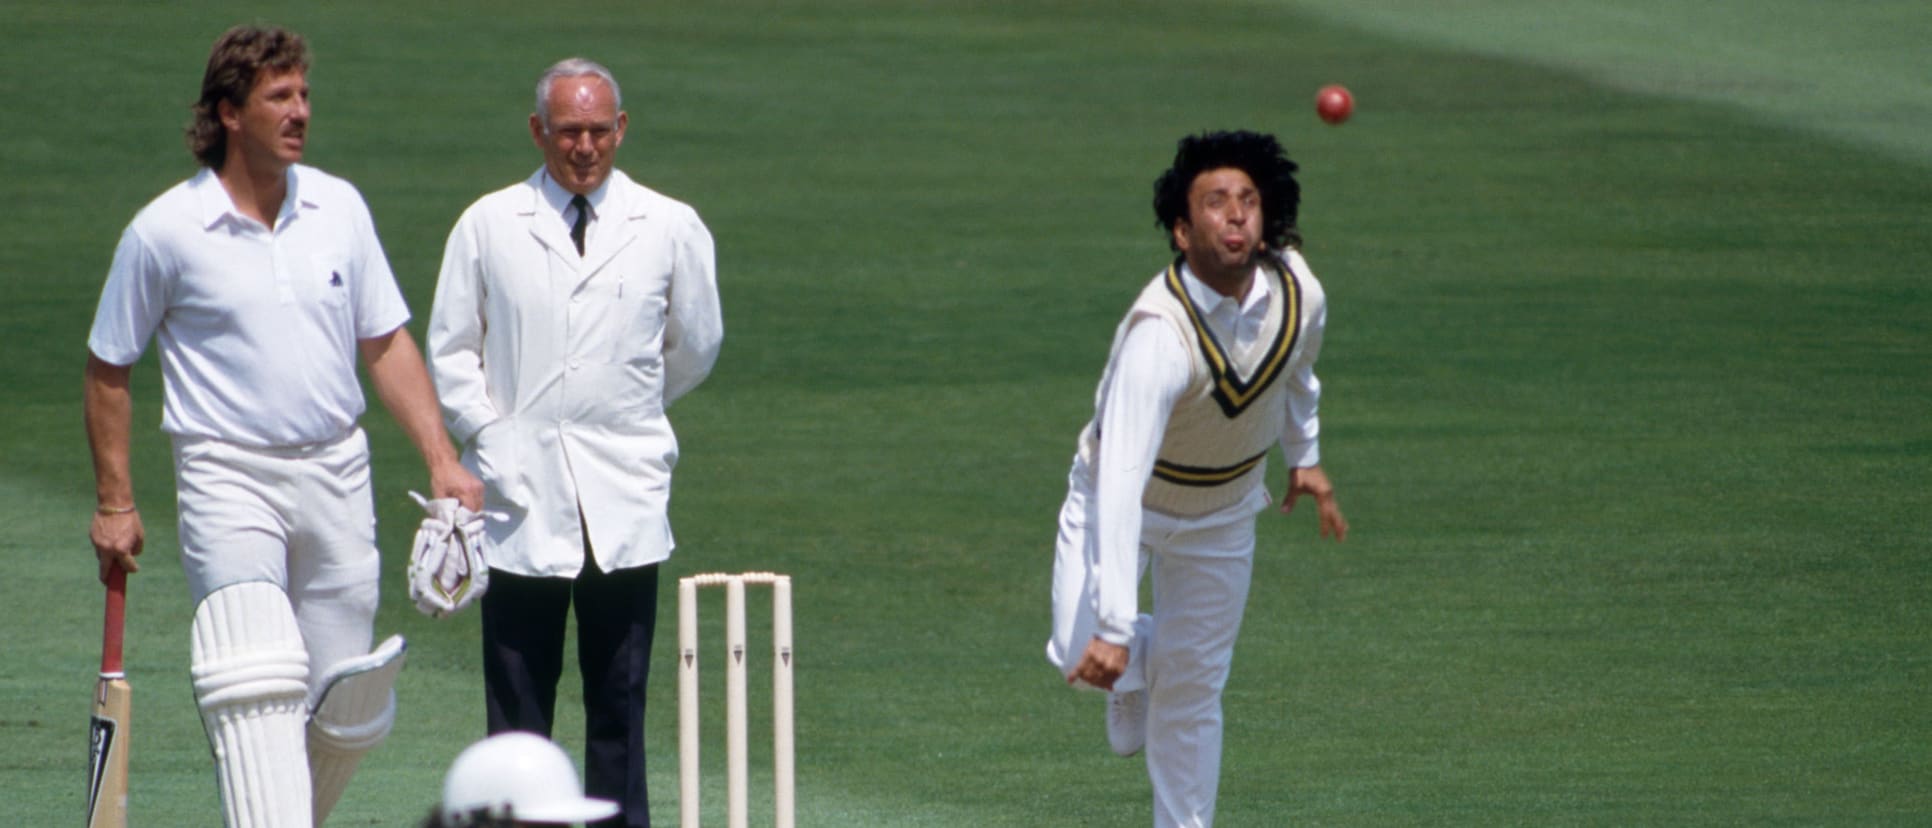 Qadir bowling against England at Headingley in 1987